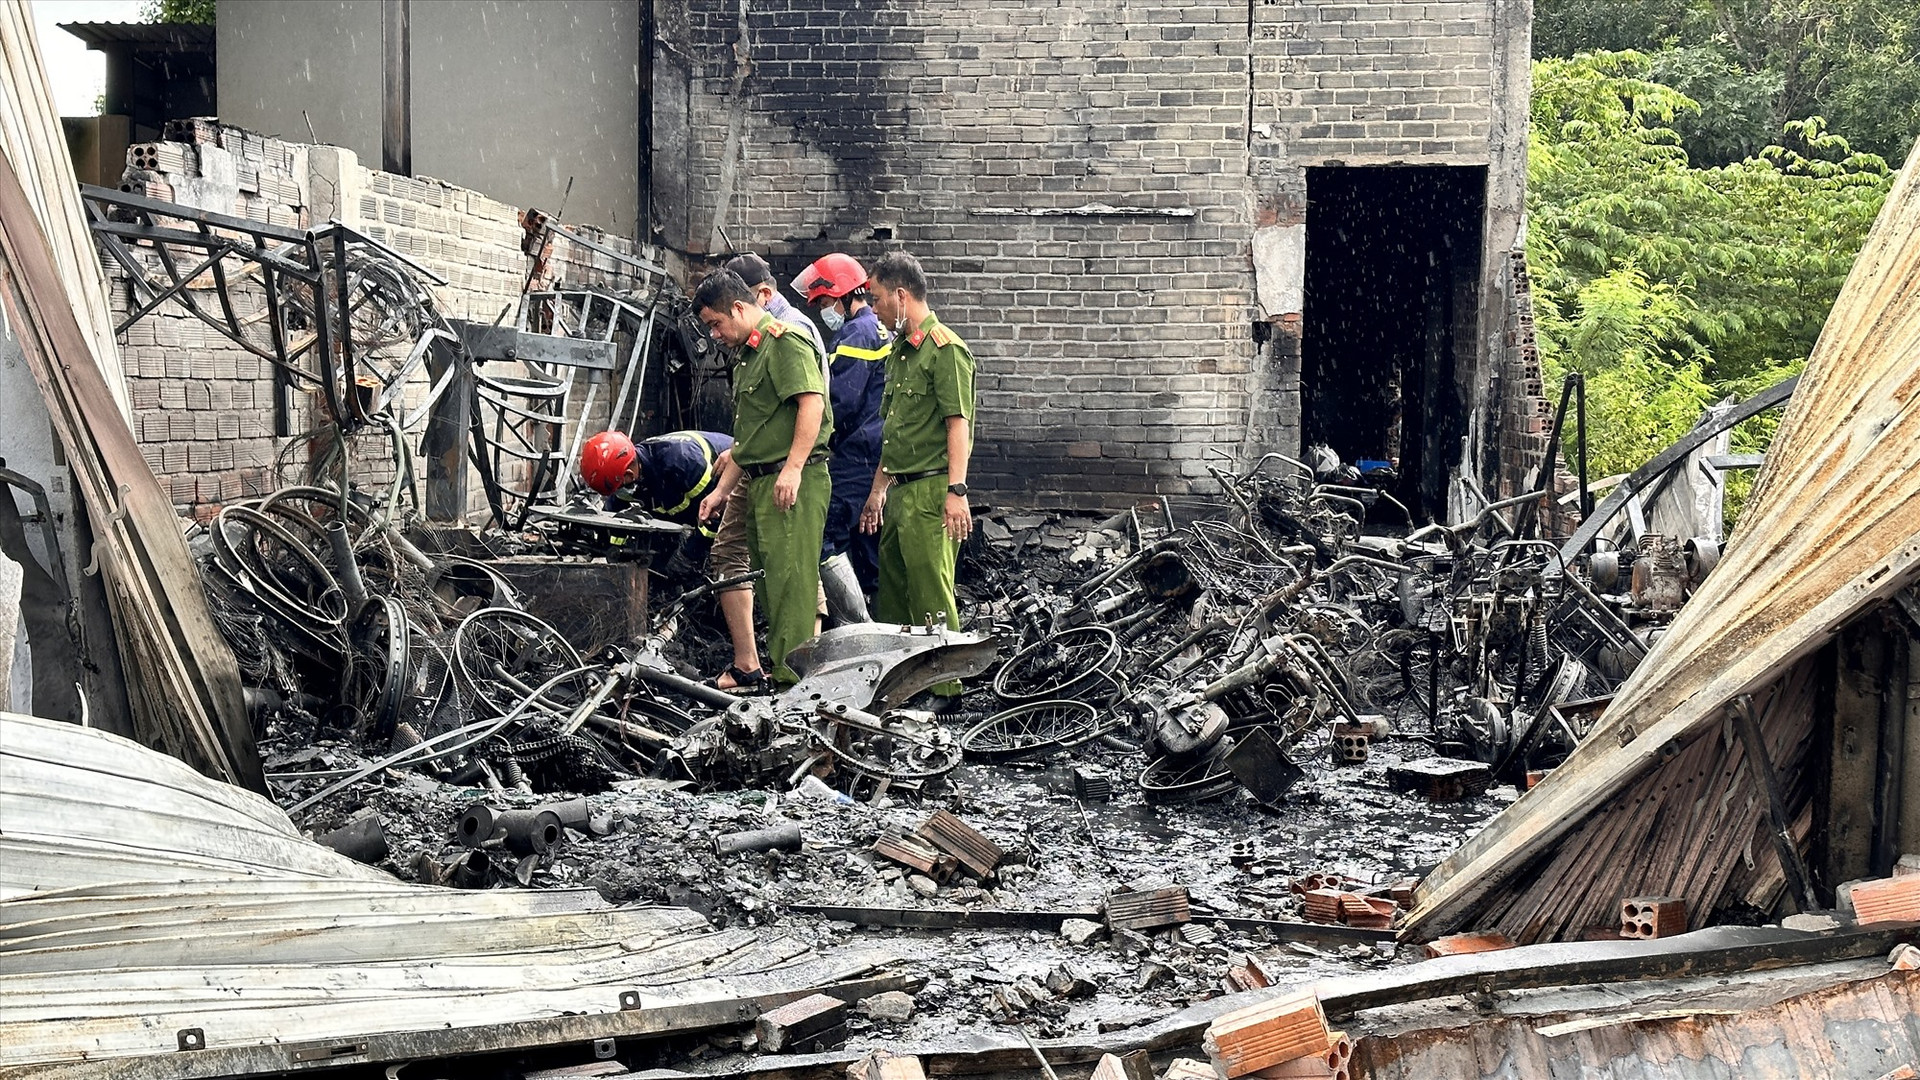 Tập trung khắc phục hậu quả, điều tra nguyên nhân vụ cháy nghiêm trọng tại Bình Thuận - Ảnh 1.